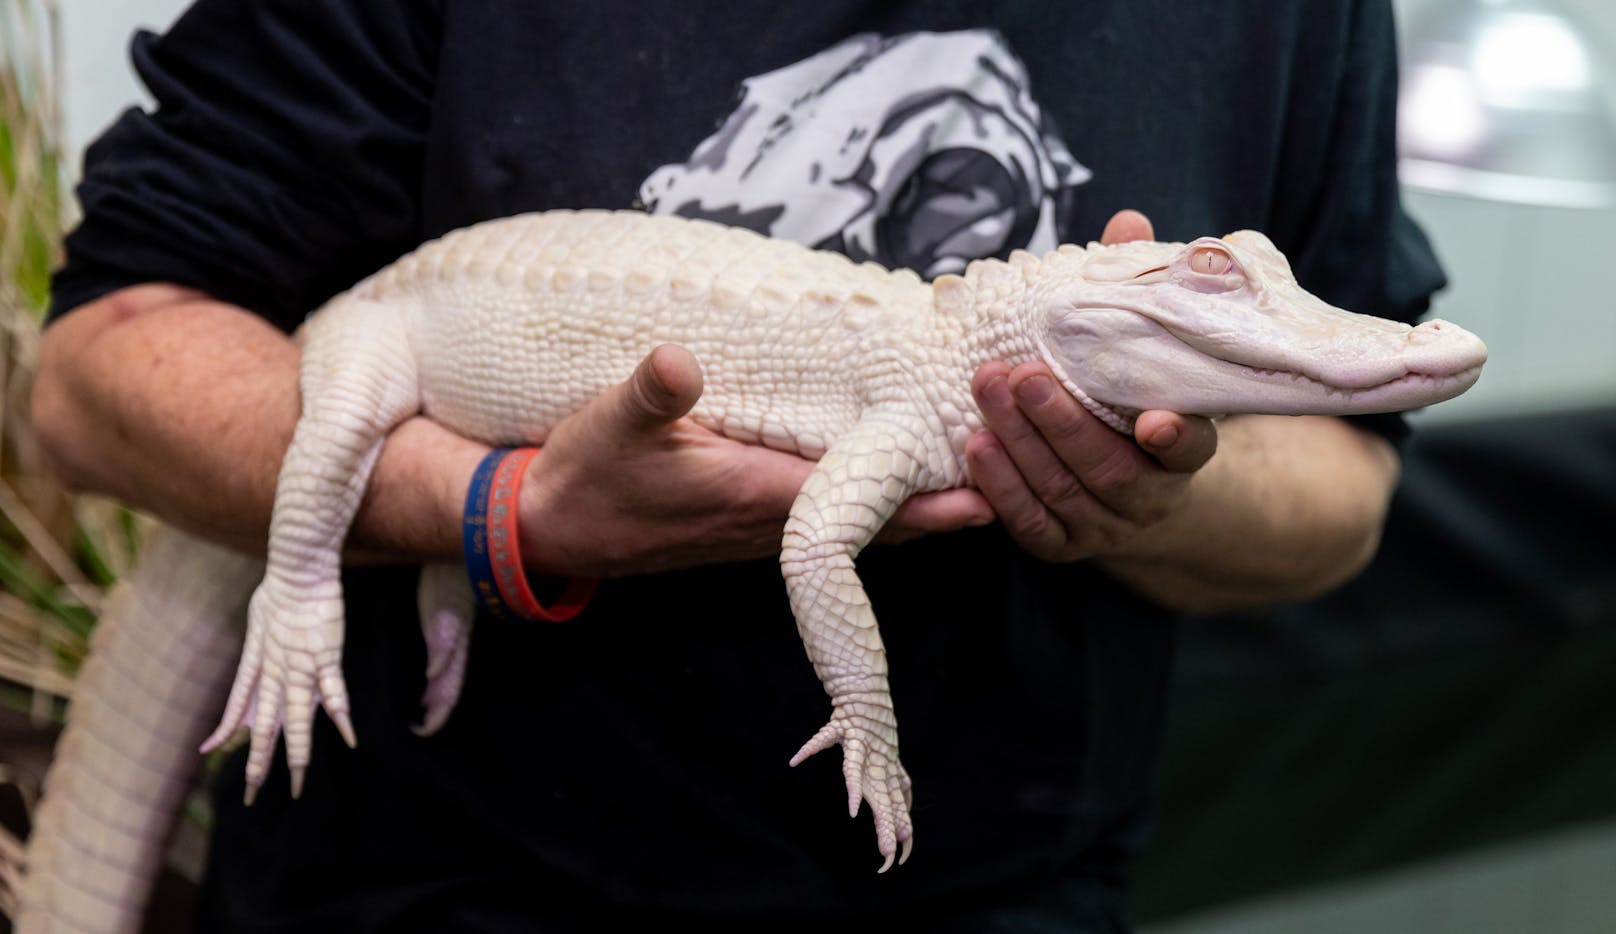 Ein 42-jähriger Geschäftsmann wollte am 25. September diesen Albino-Alligator lebend durch den Zoll am Flughafen München schmuggeln.